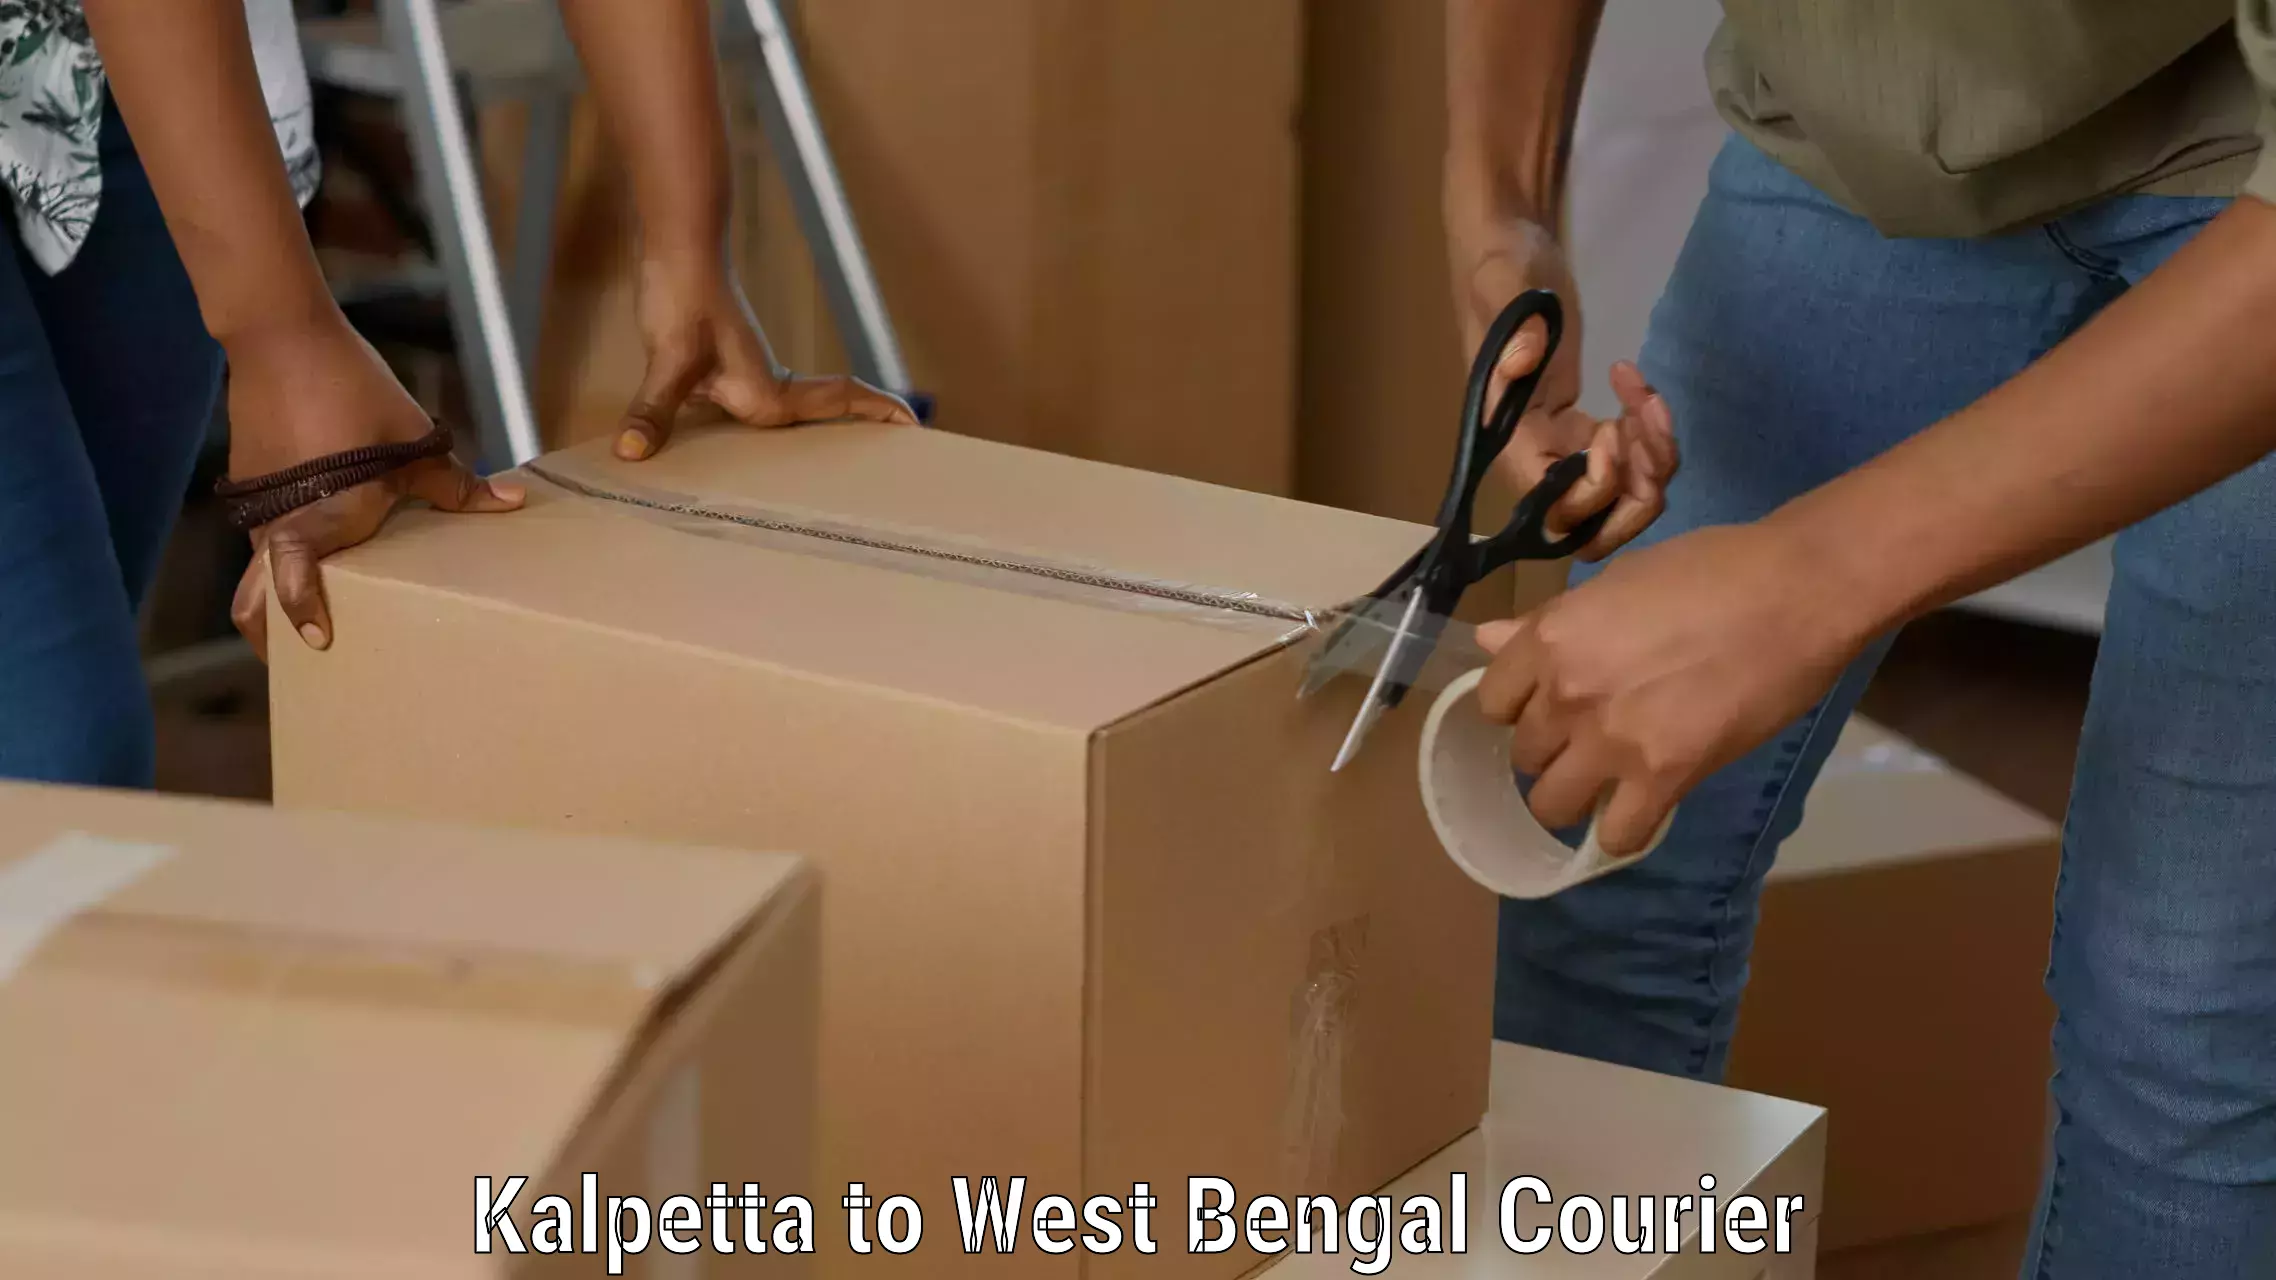 International logistics solutions Kalpetta to West Bengal